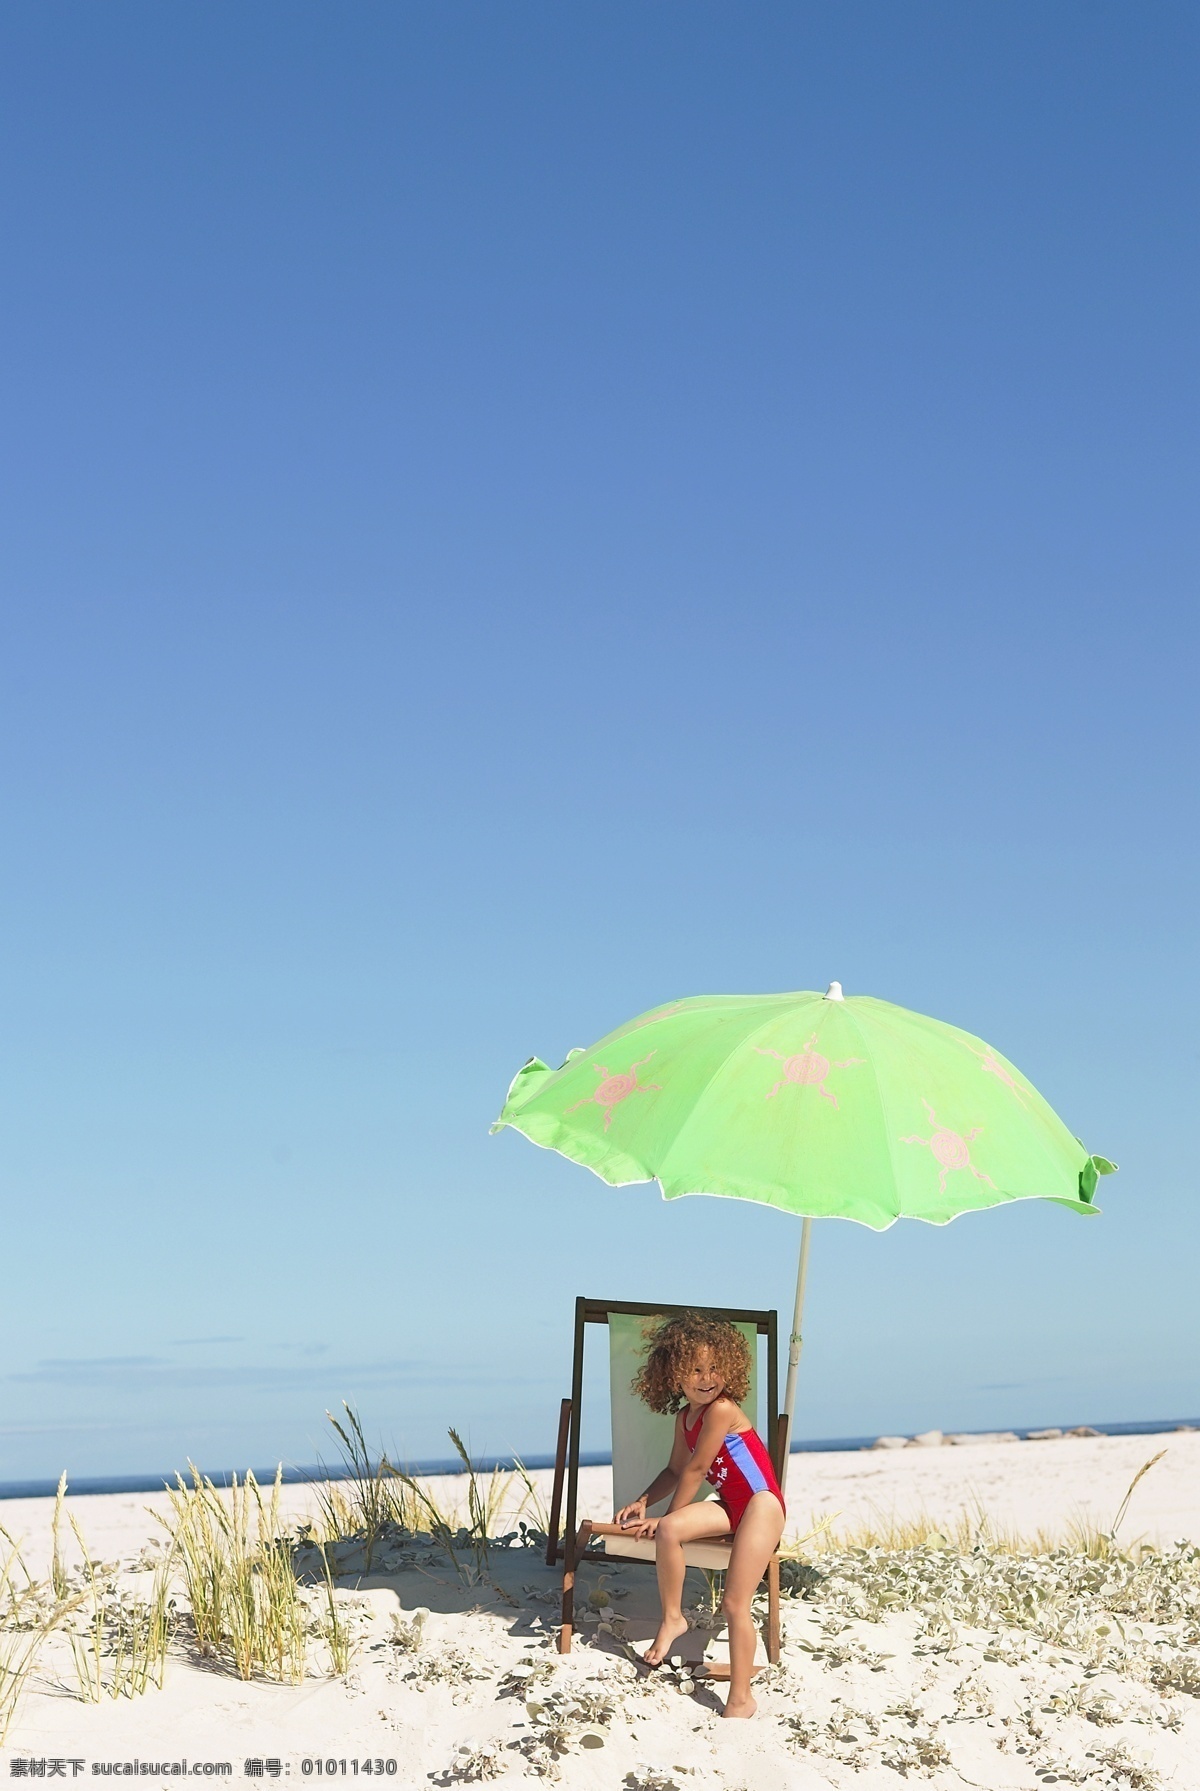 沙滩 上 晒太阳 小女孩 人物 海边 躺椅 太阳伞 遮阳 蓝天 开心 微笑 生活人物 人物图片